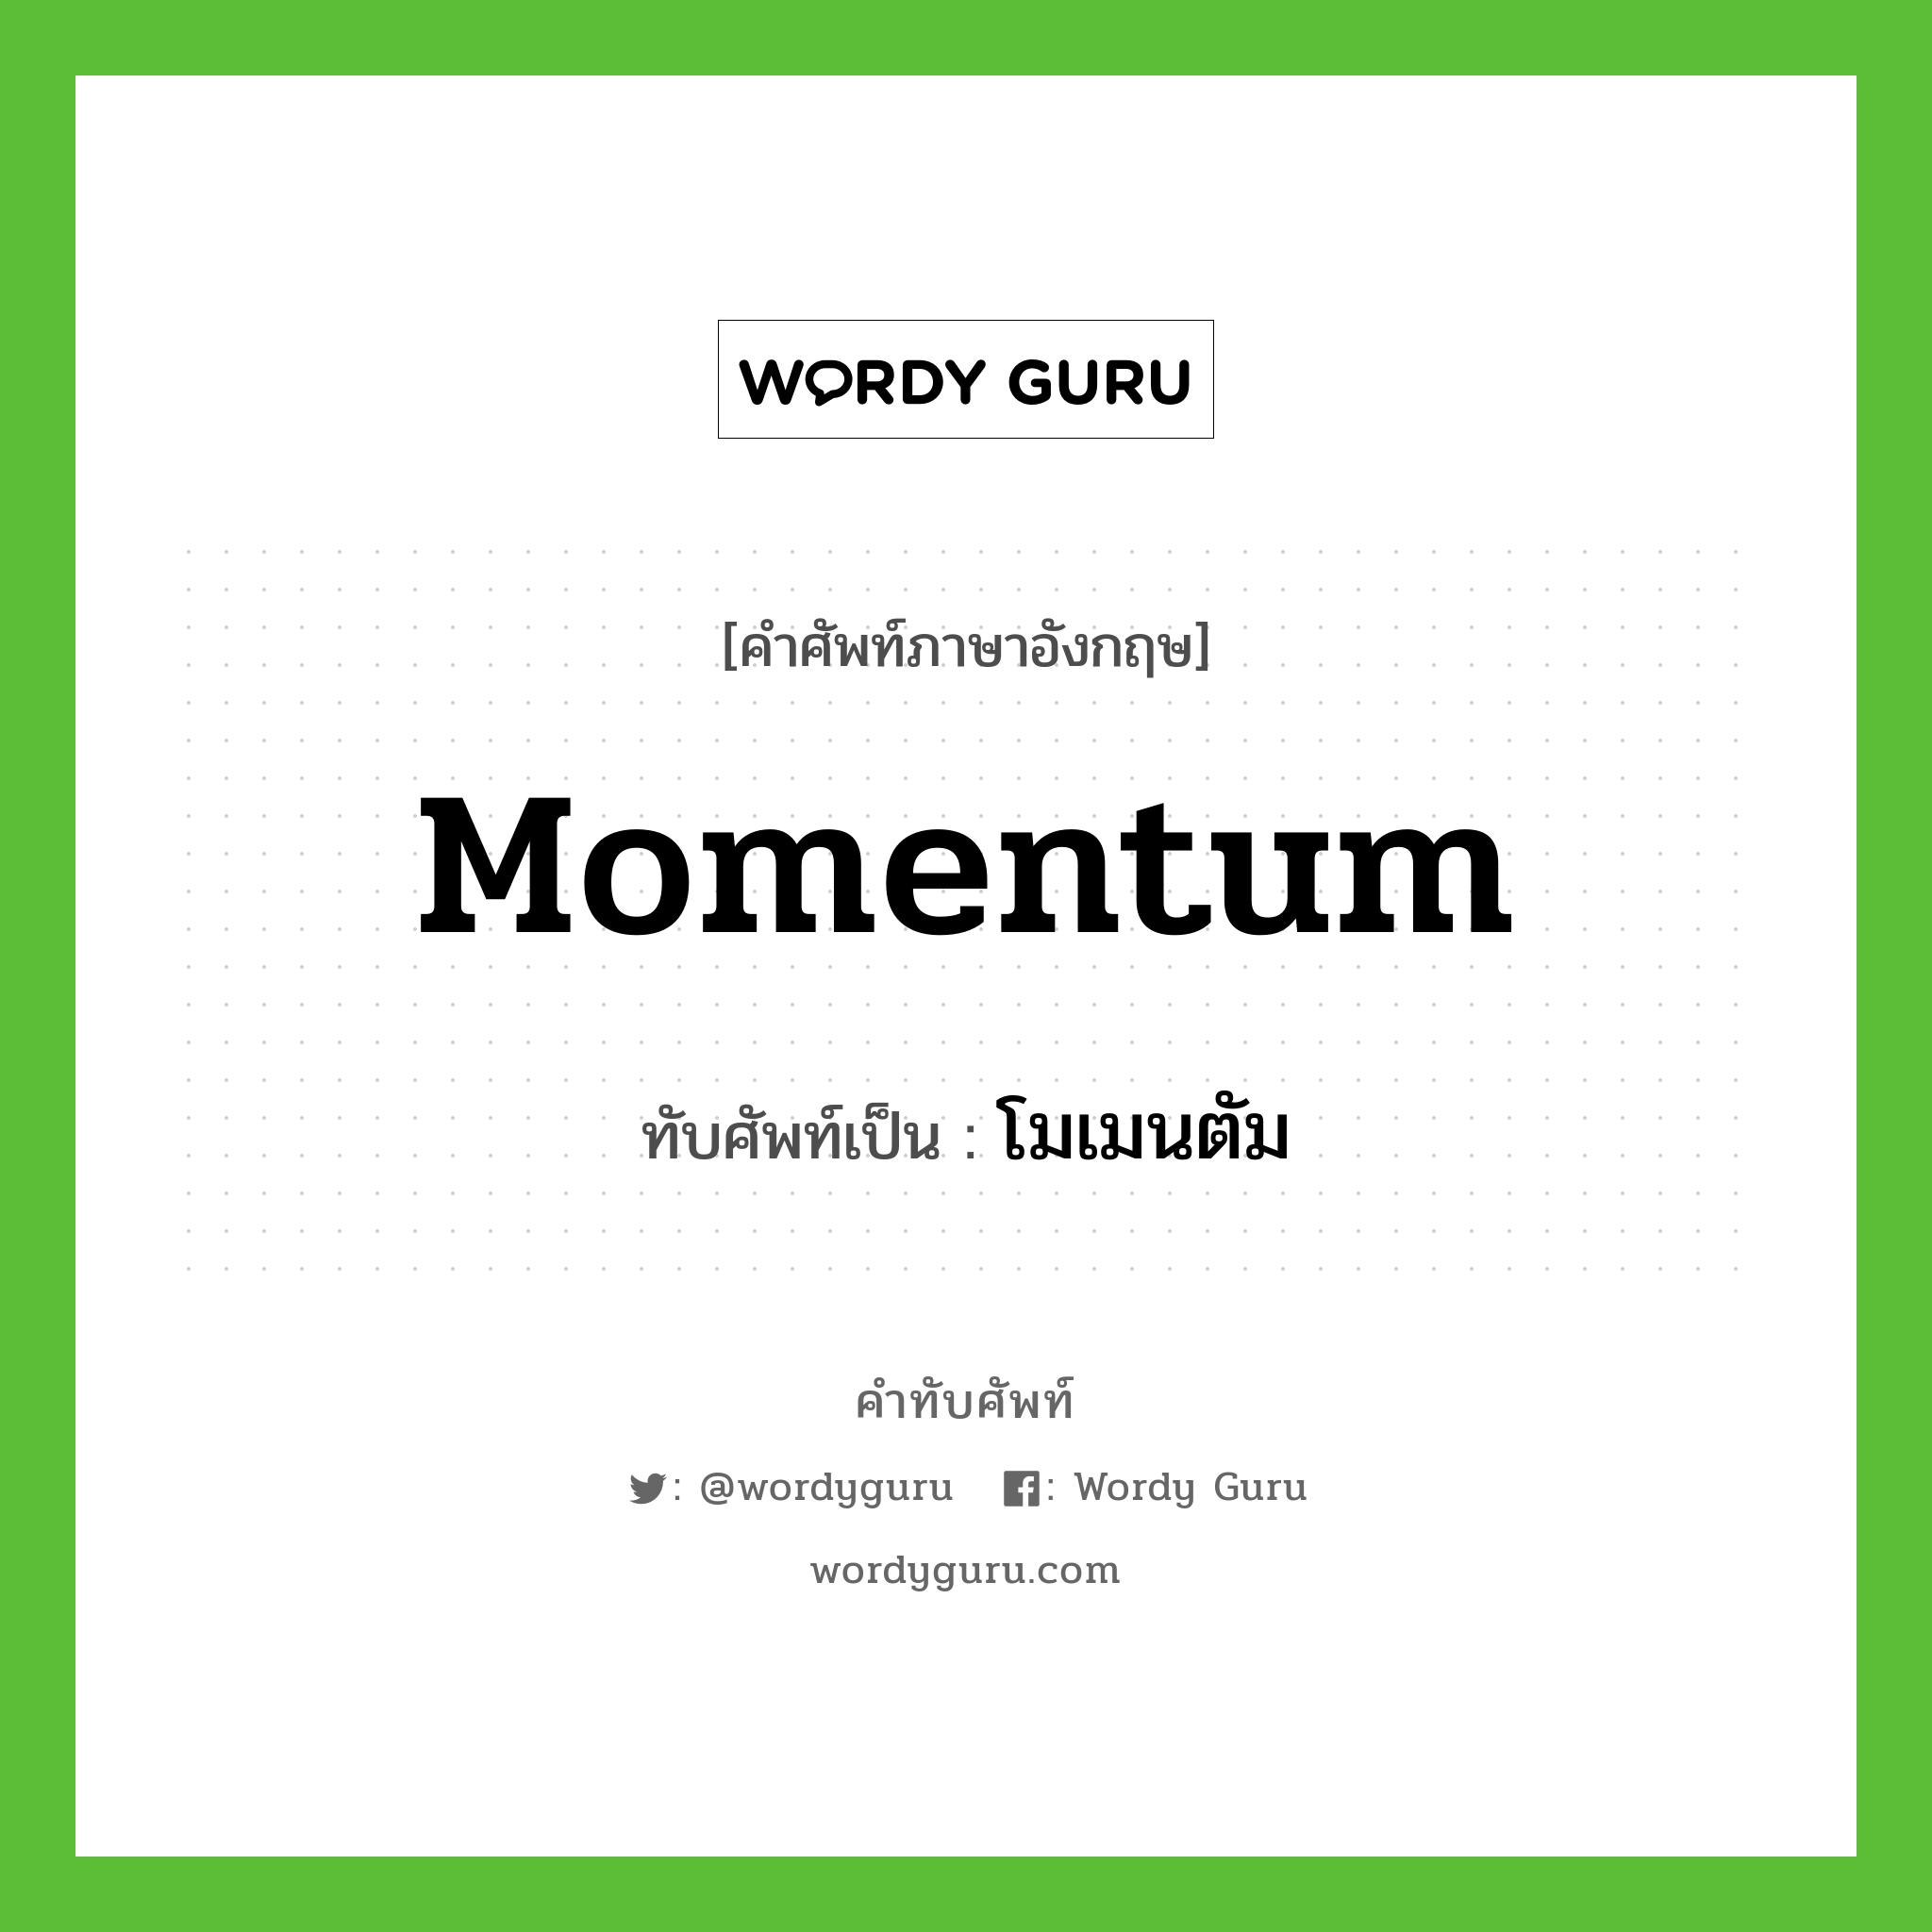 momentum เขียนเป็นคำไทยว่าอะไร?, คำศัพท์ภาษาอังกฤษ momentum ทับศัพท์เป็น โมเมนตัม